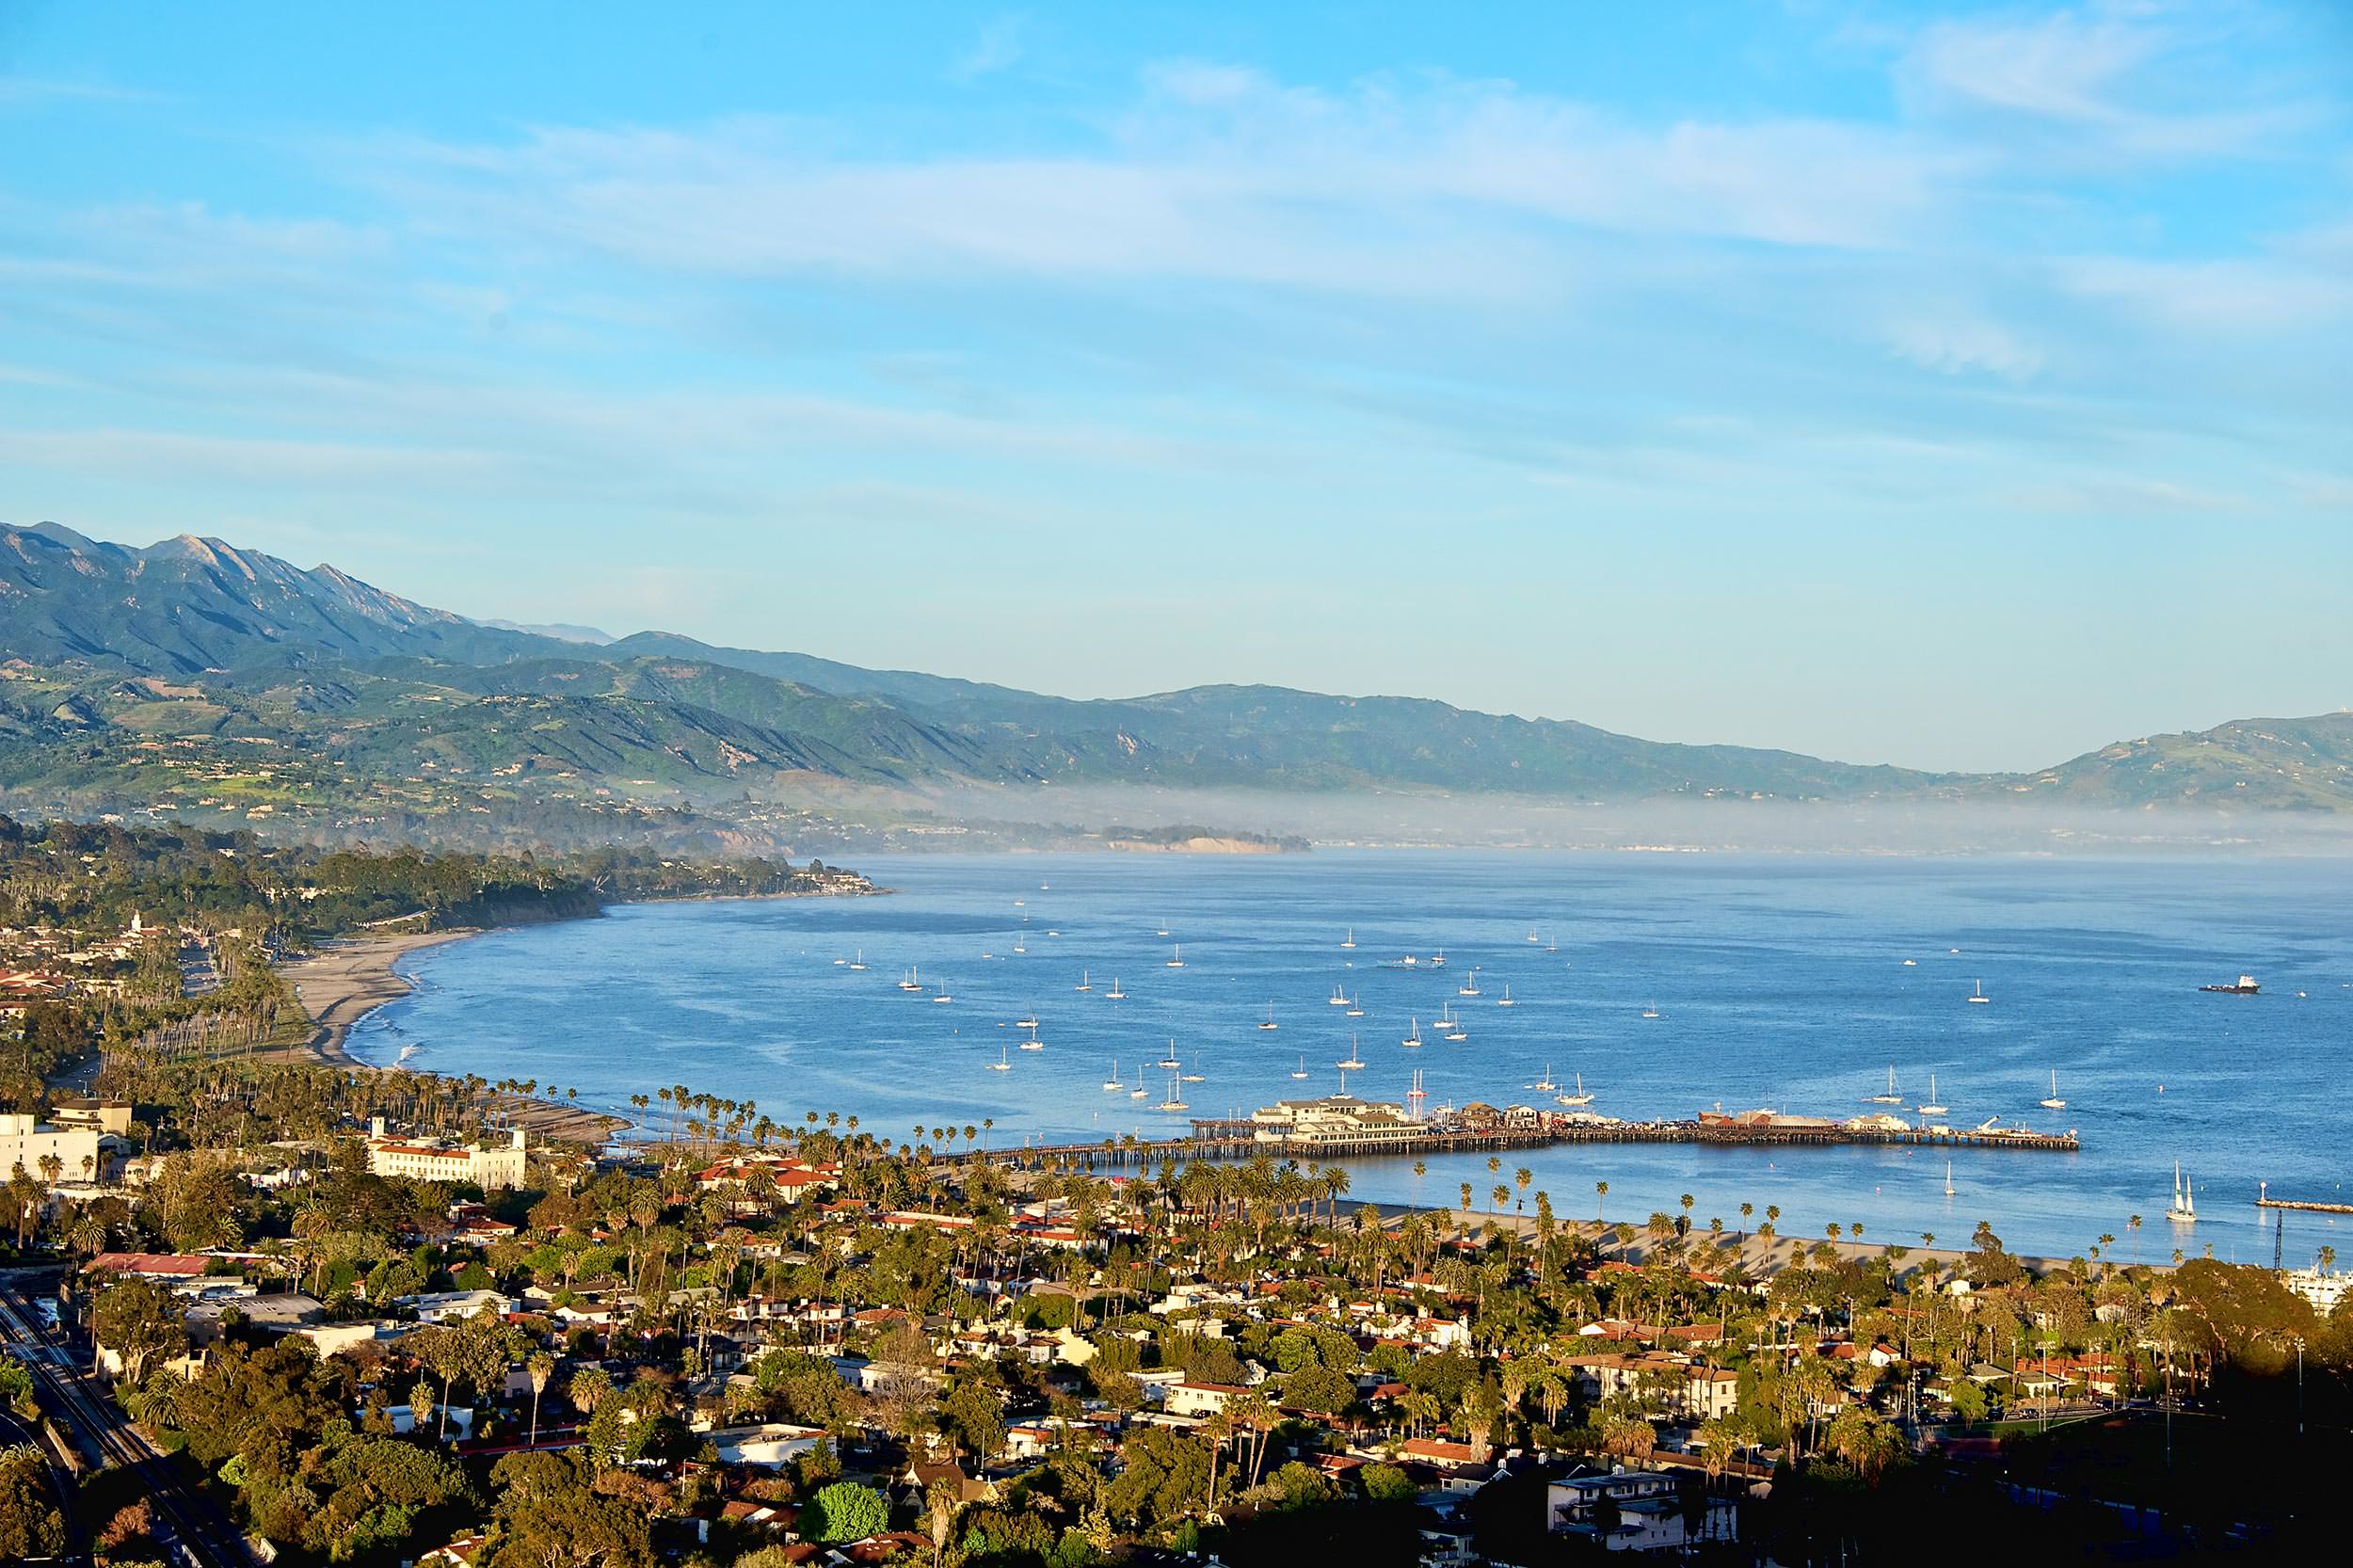 View of Santa Barbara Bay